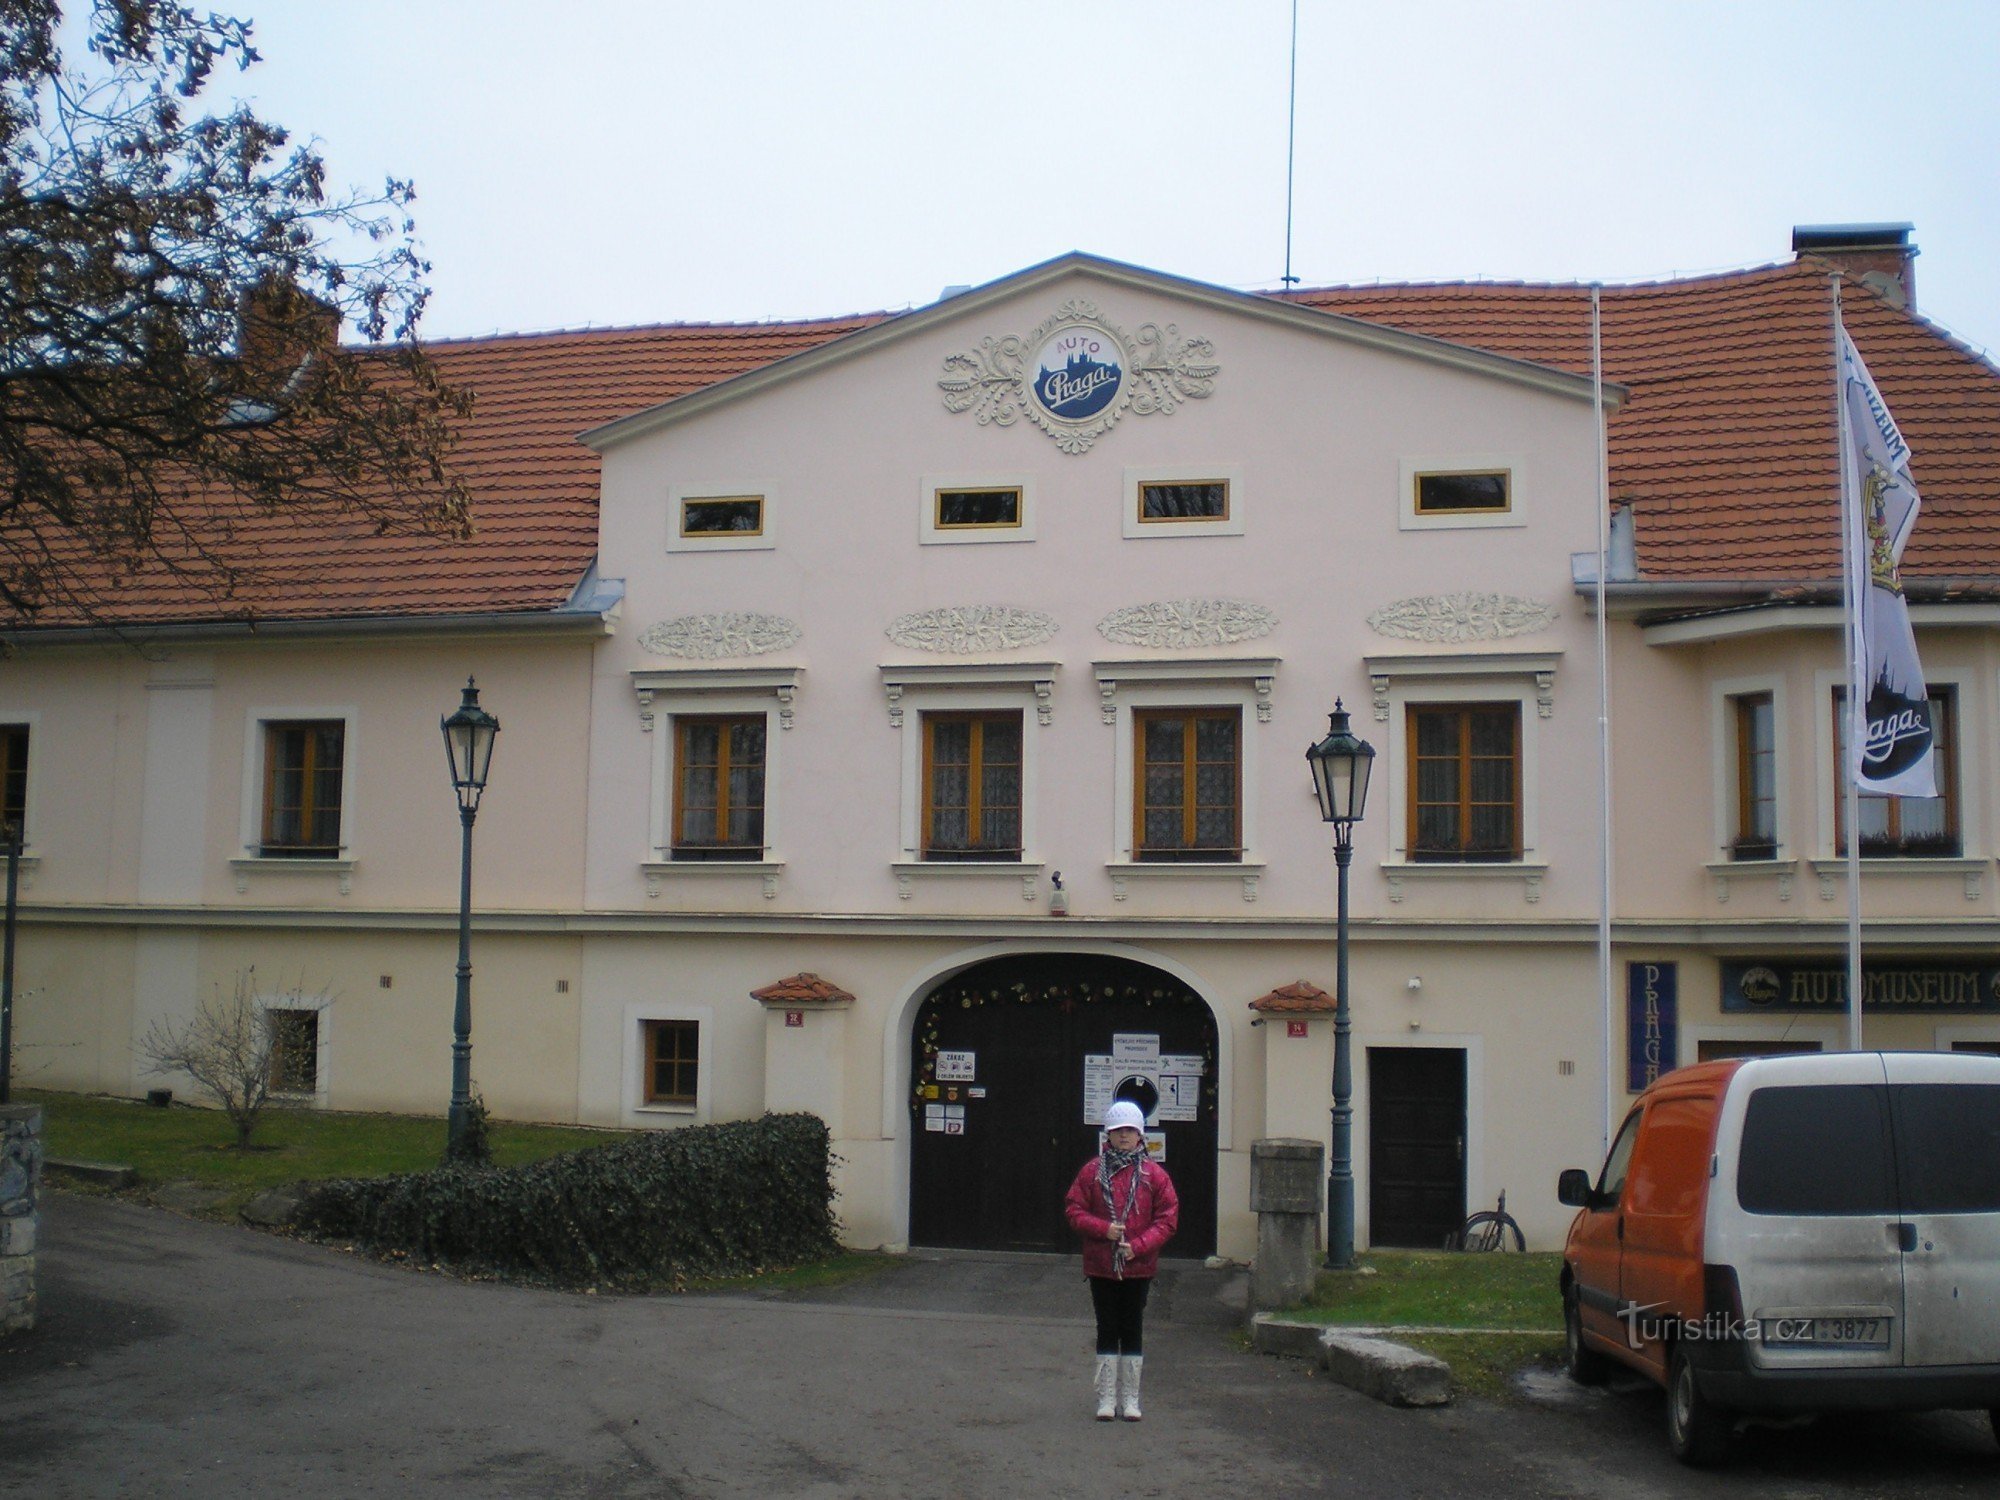 Prags bilmuseum